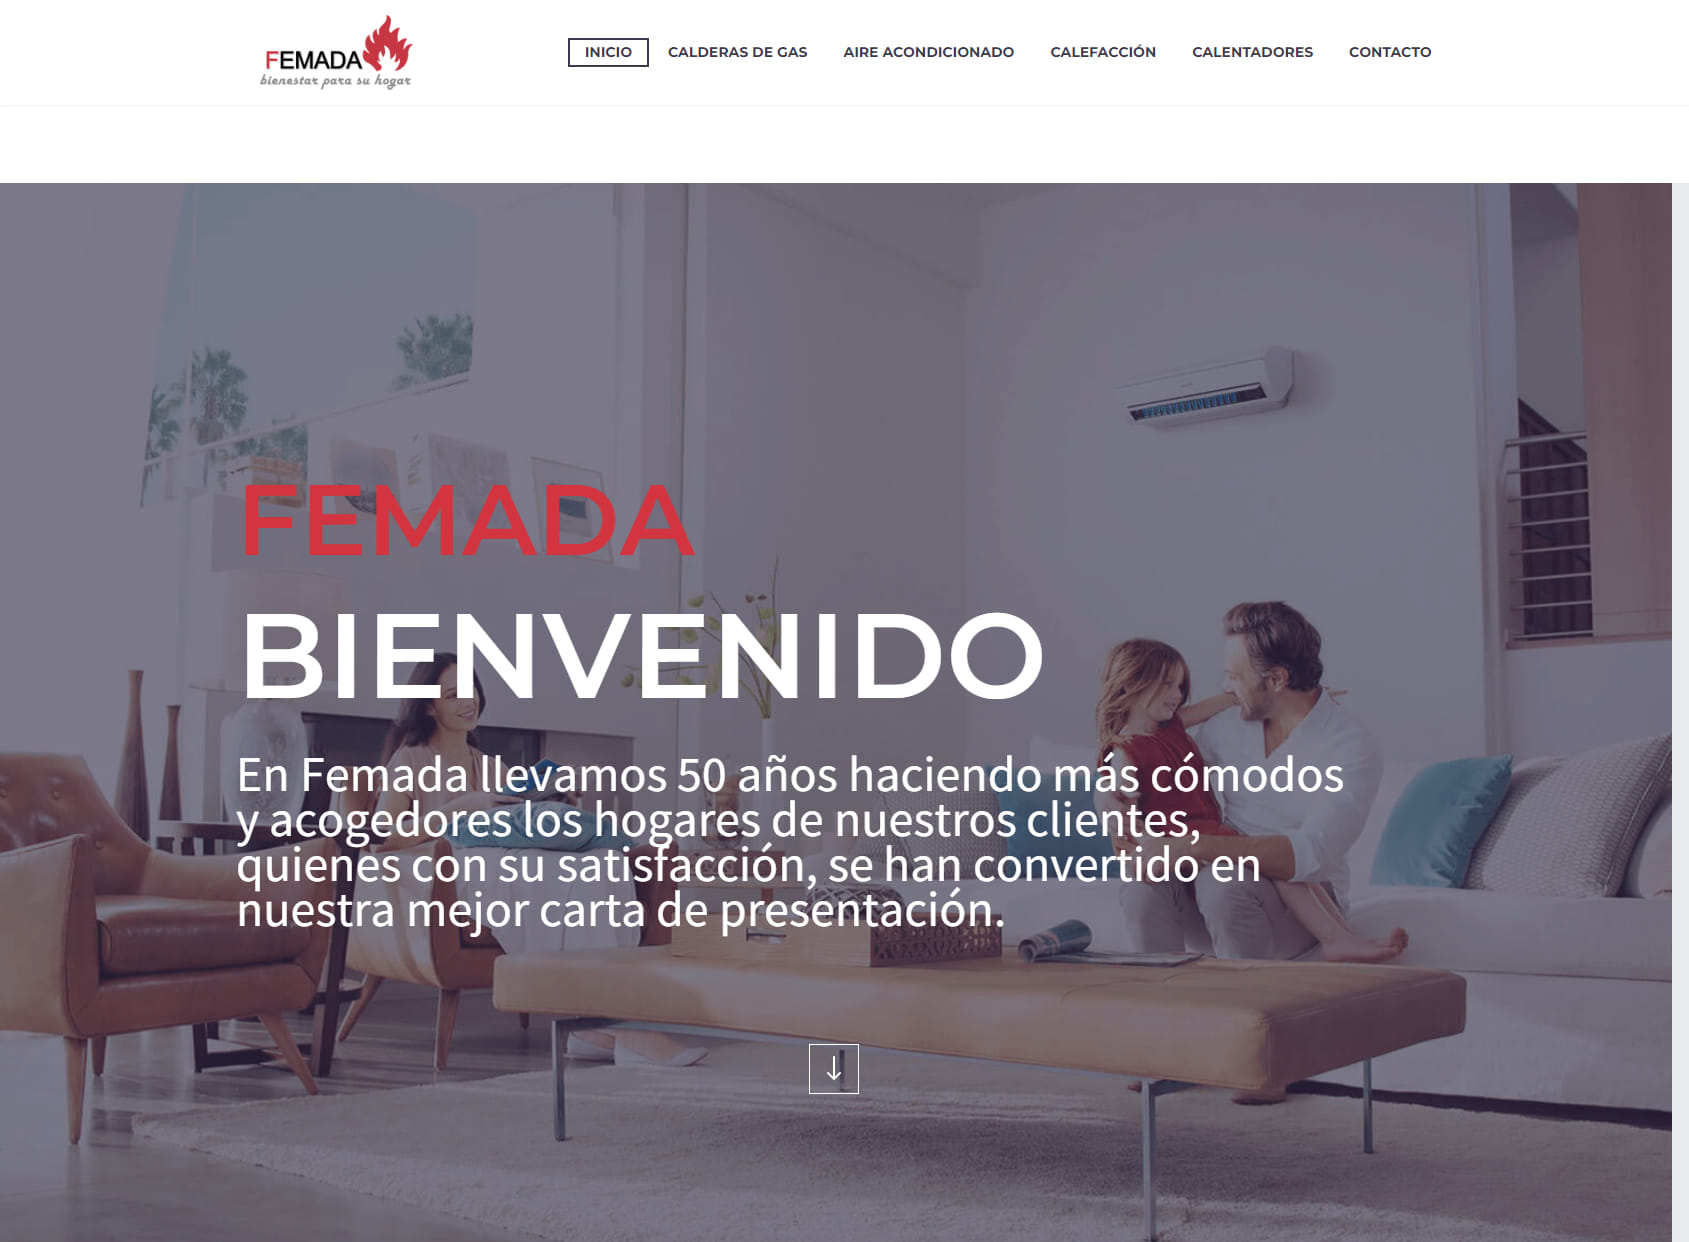 FEMADA Empresa de calderas, Ofertas de Calderas Gas, Calentadores y Aire Acondicionado en Madrid